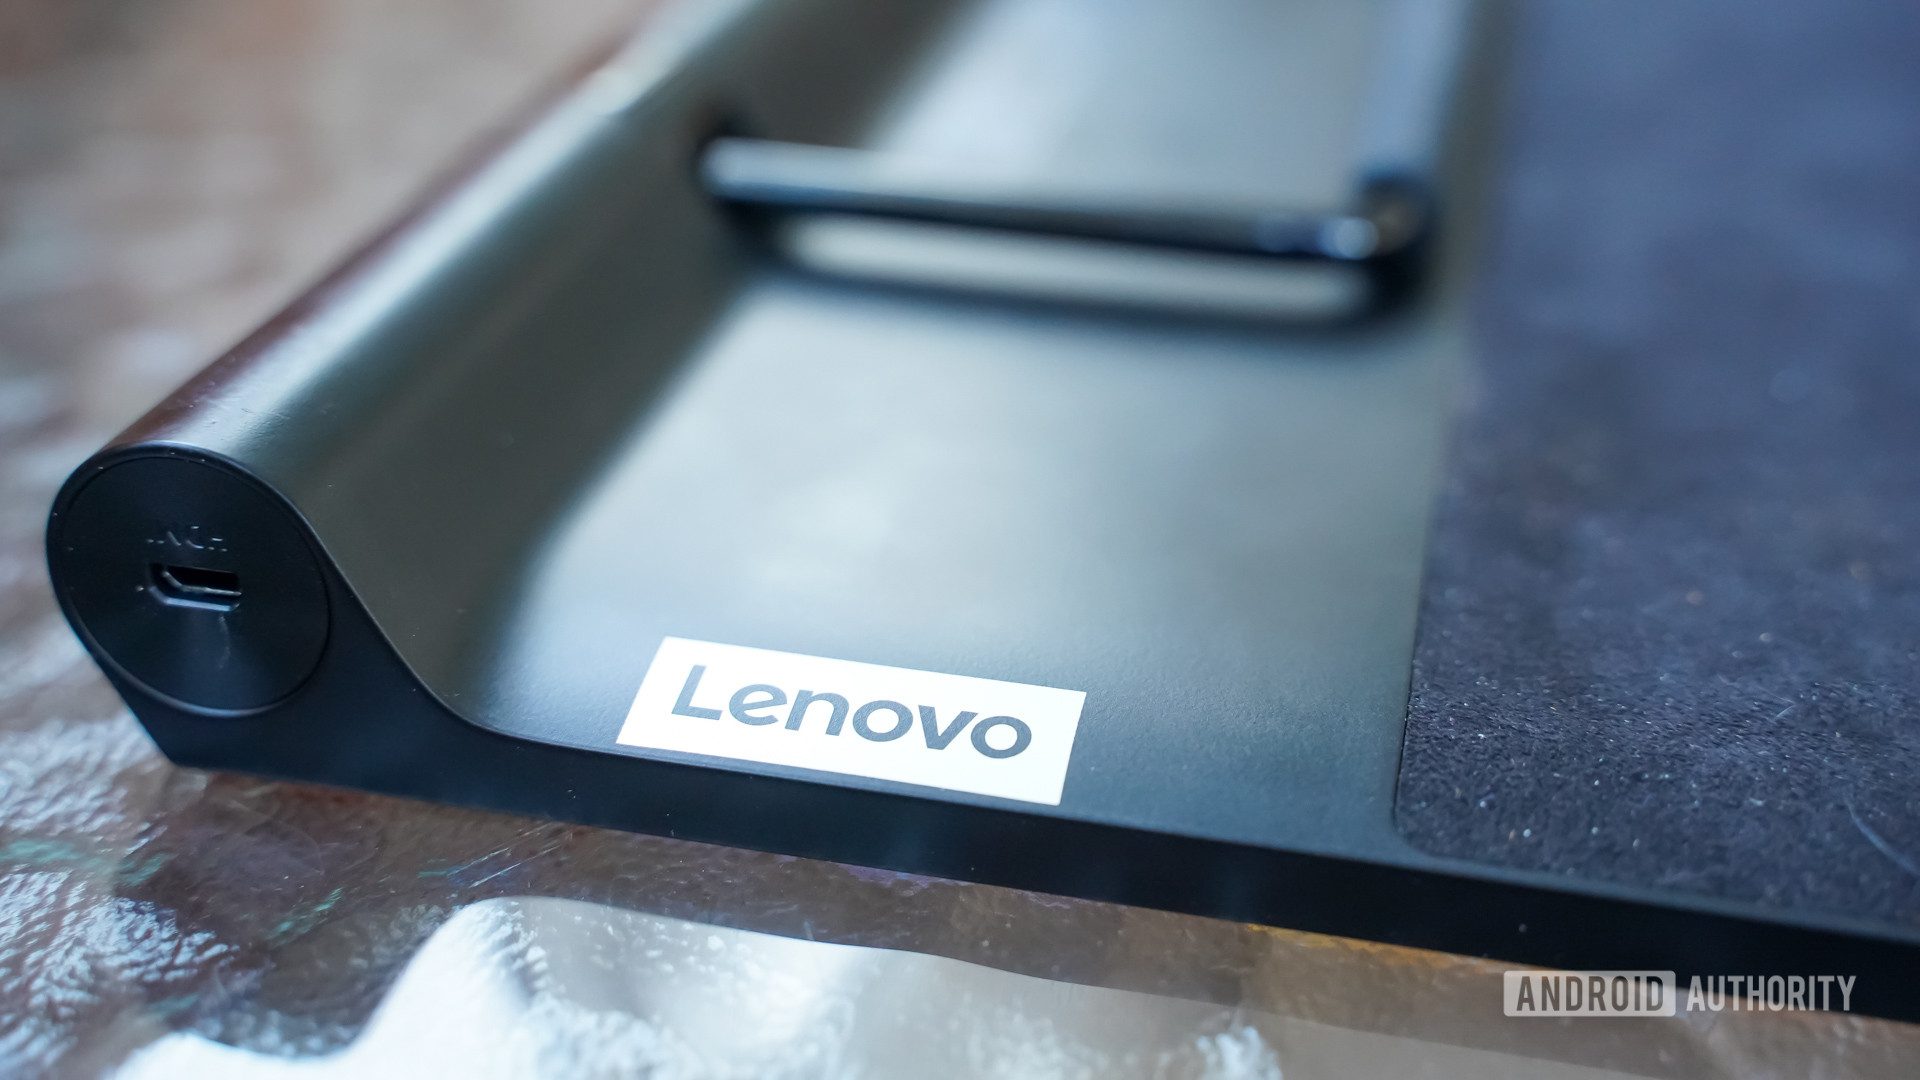 Söylentilere göre Lenovo Legion Go, bir sonraki Steam Deck rakibi olabilir